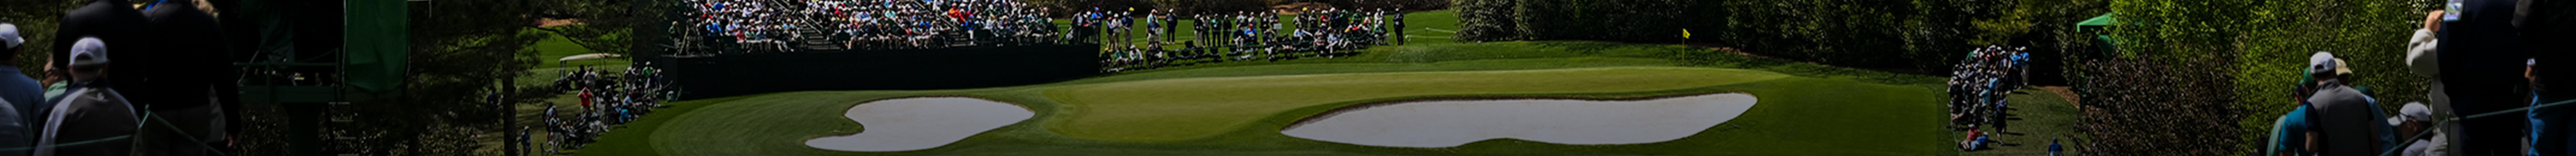 european tour golf media